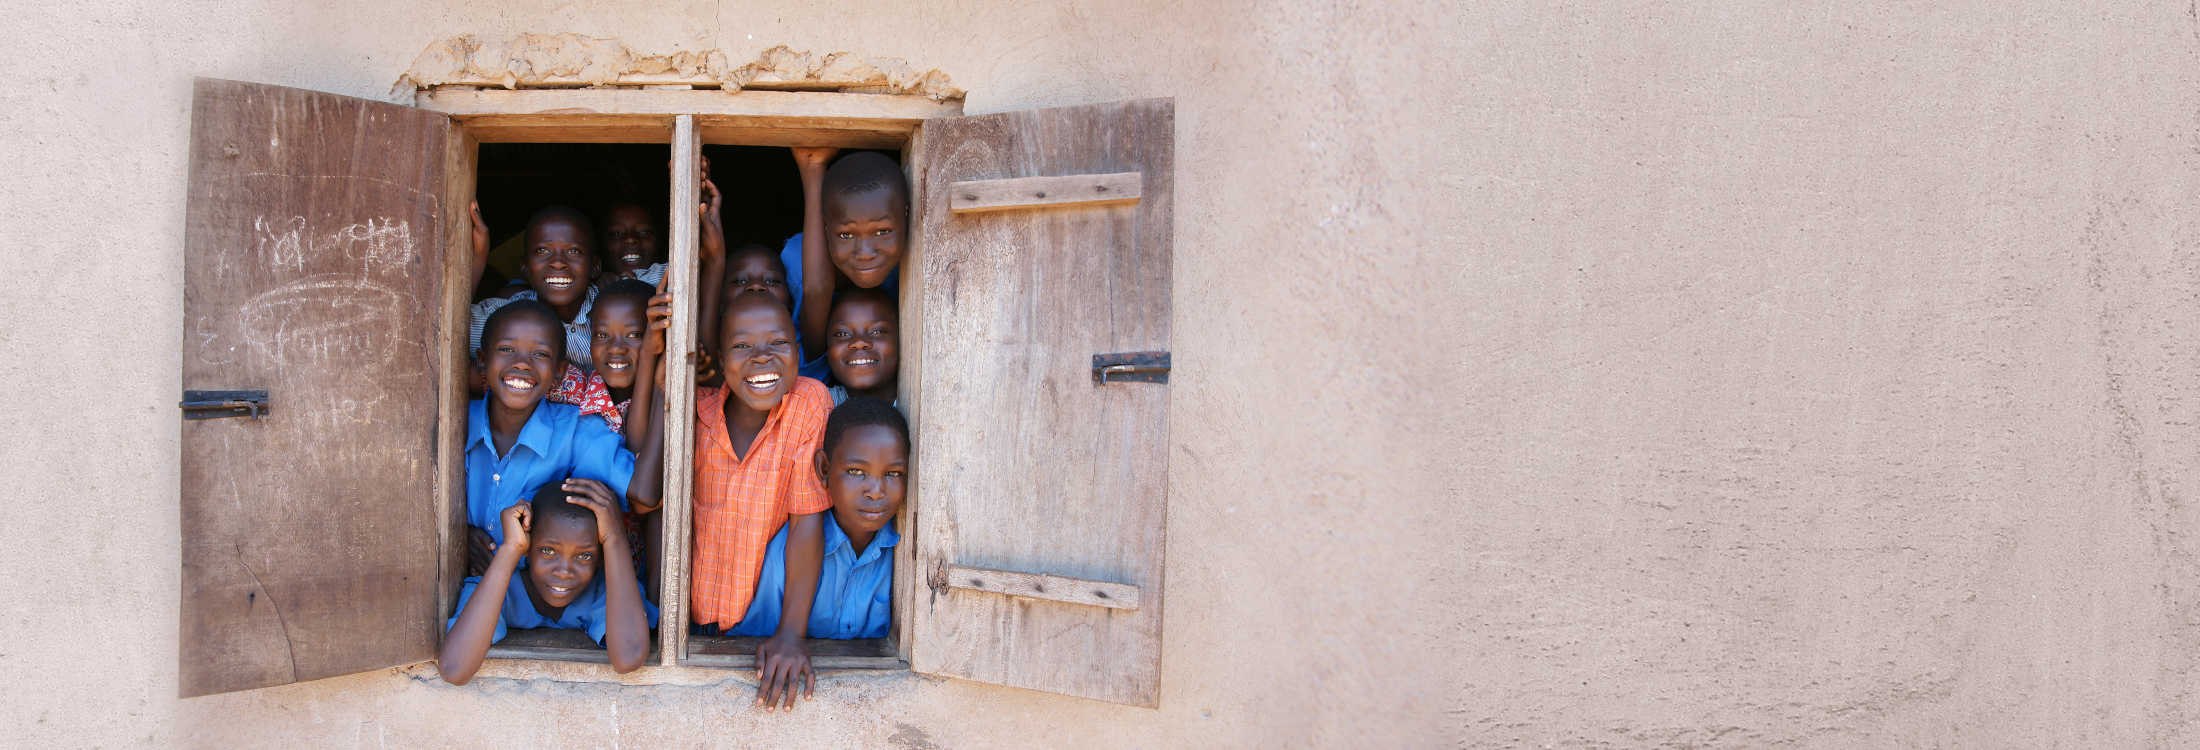 Envie dinheiro aos seus entes queridos no Uganda - rápido e seguro com sendvalu